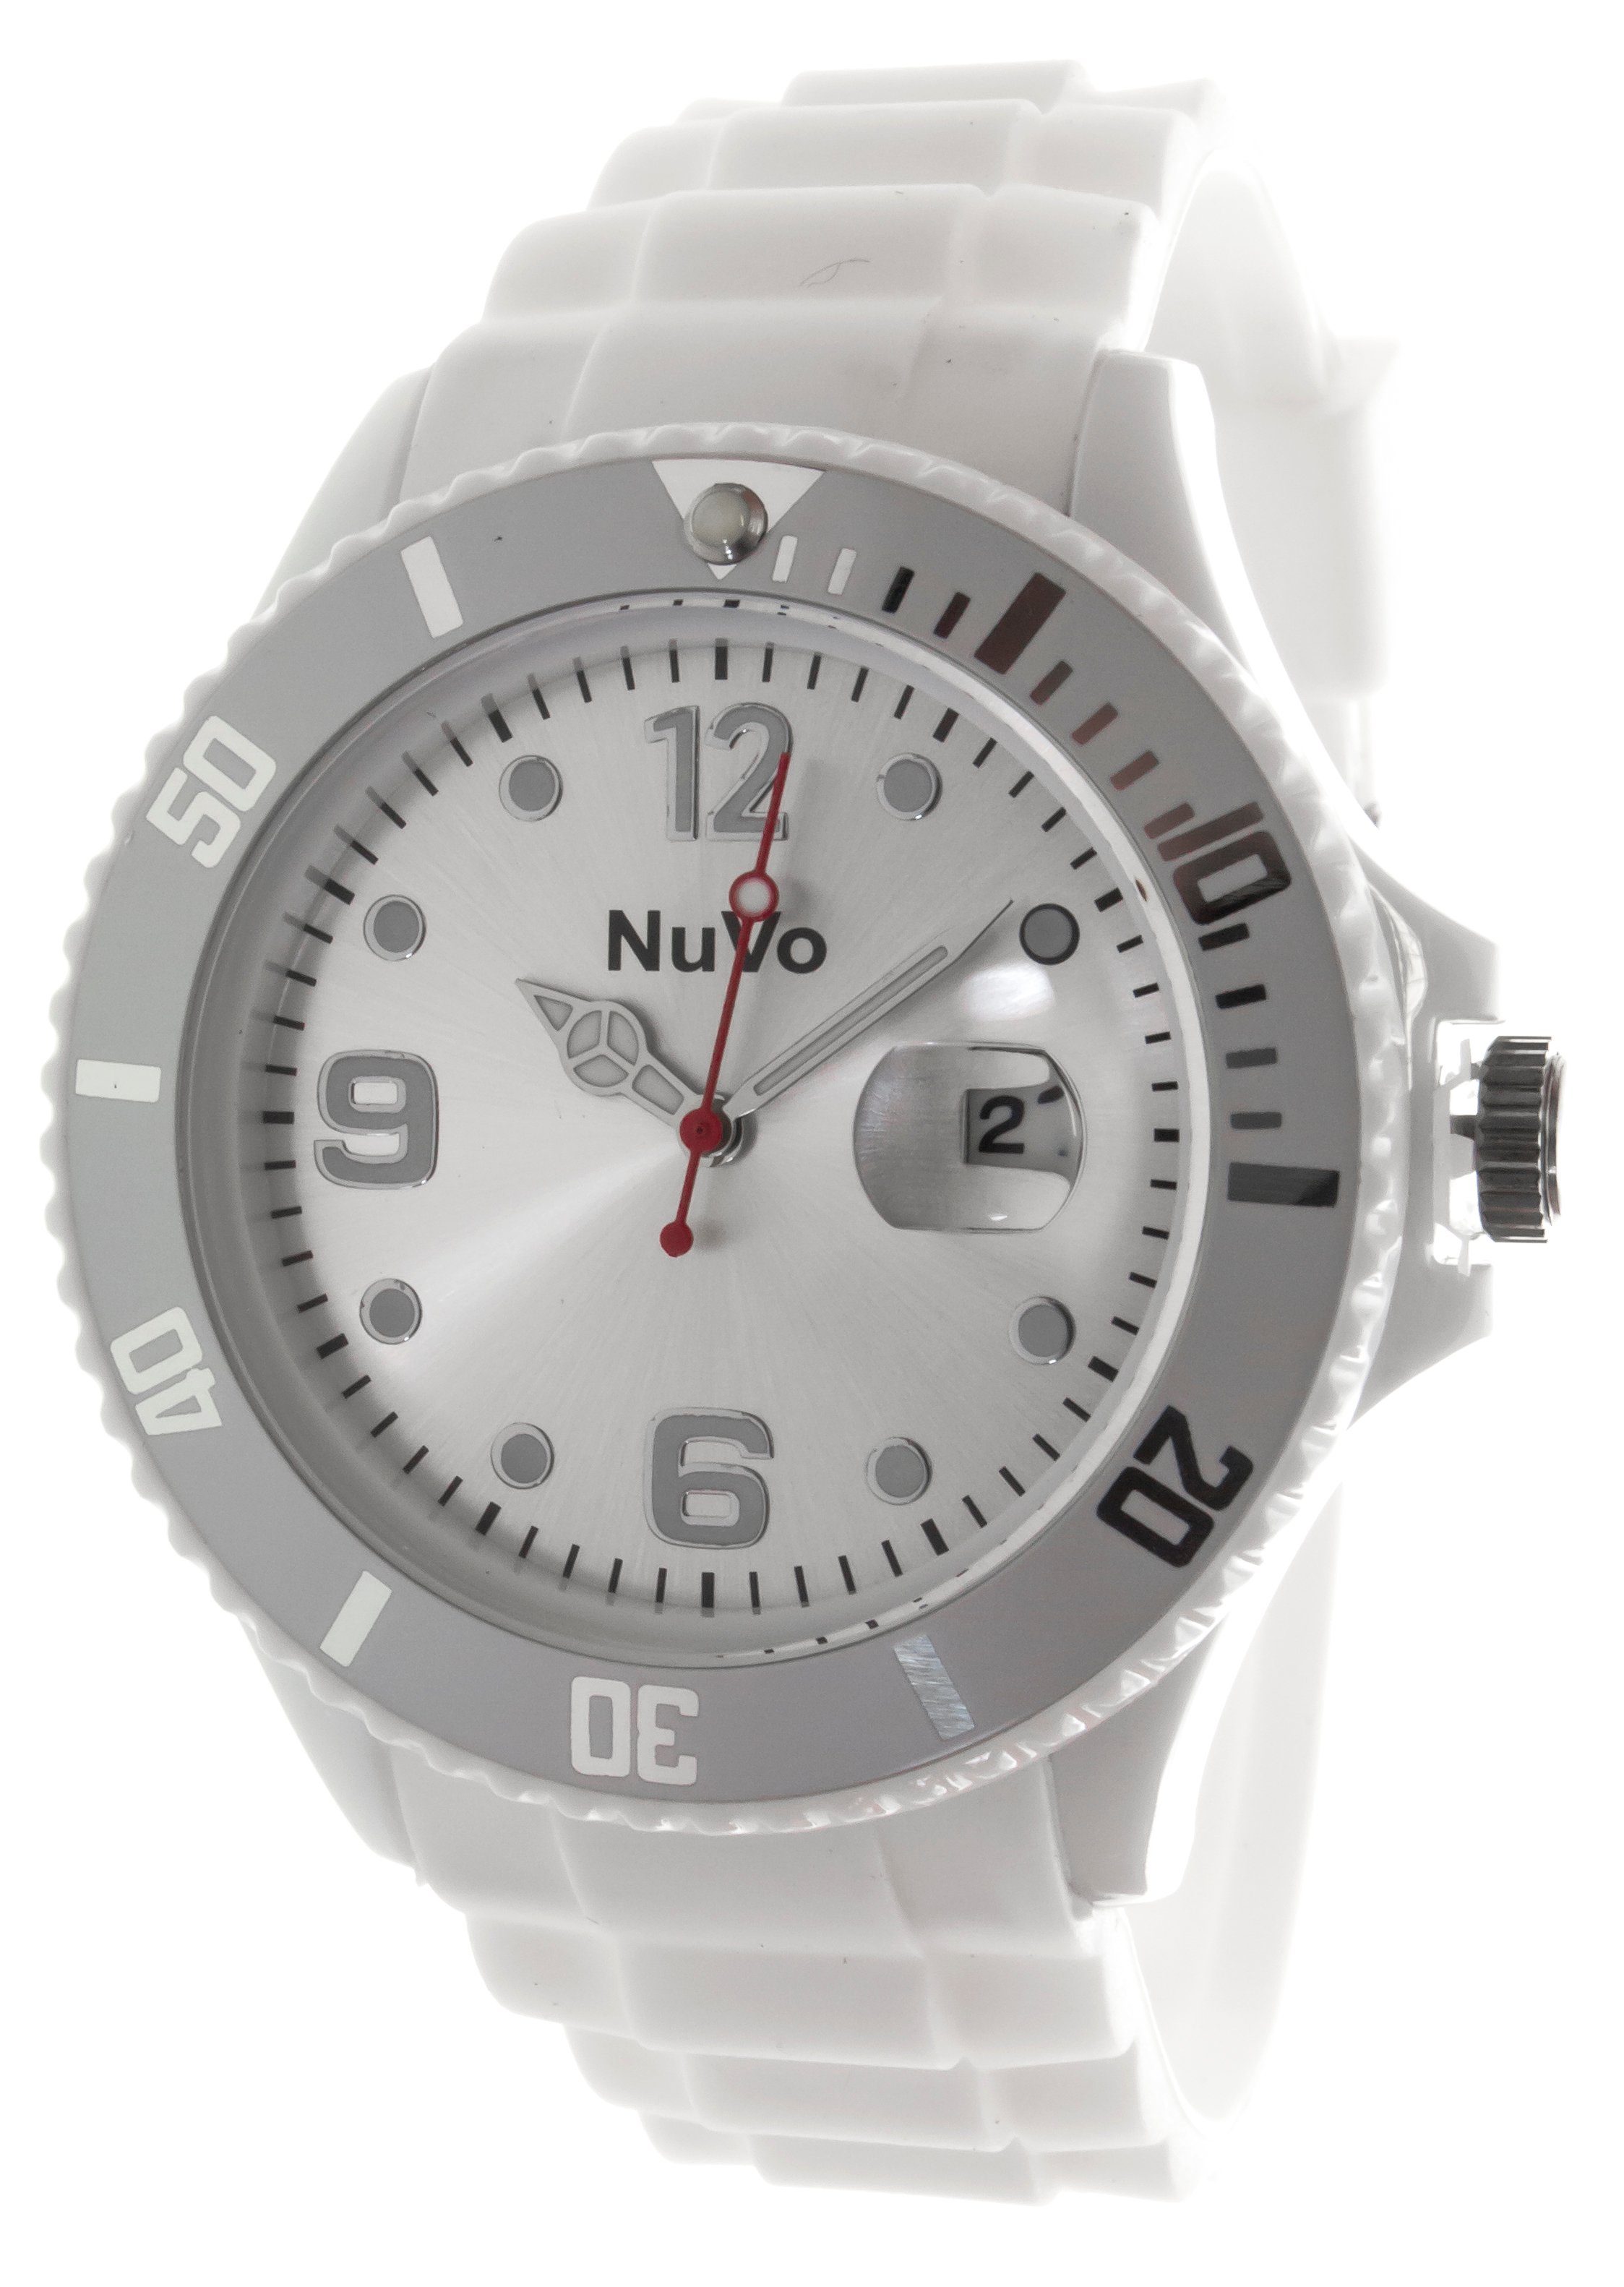 Nuvo Quarzuhr Stylische Unisex Armbanduhr mit drehbarer Lünette